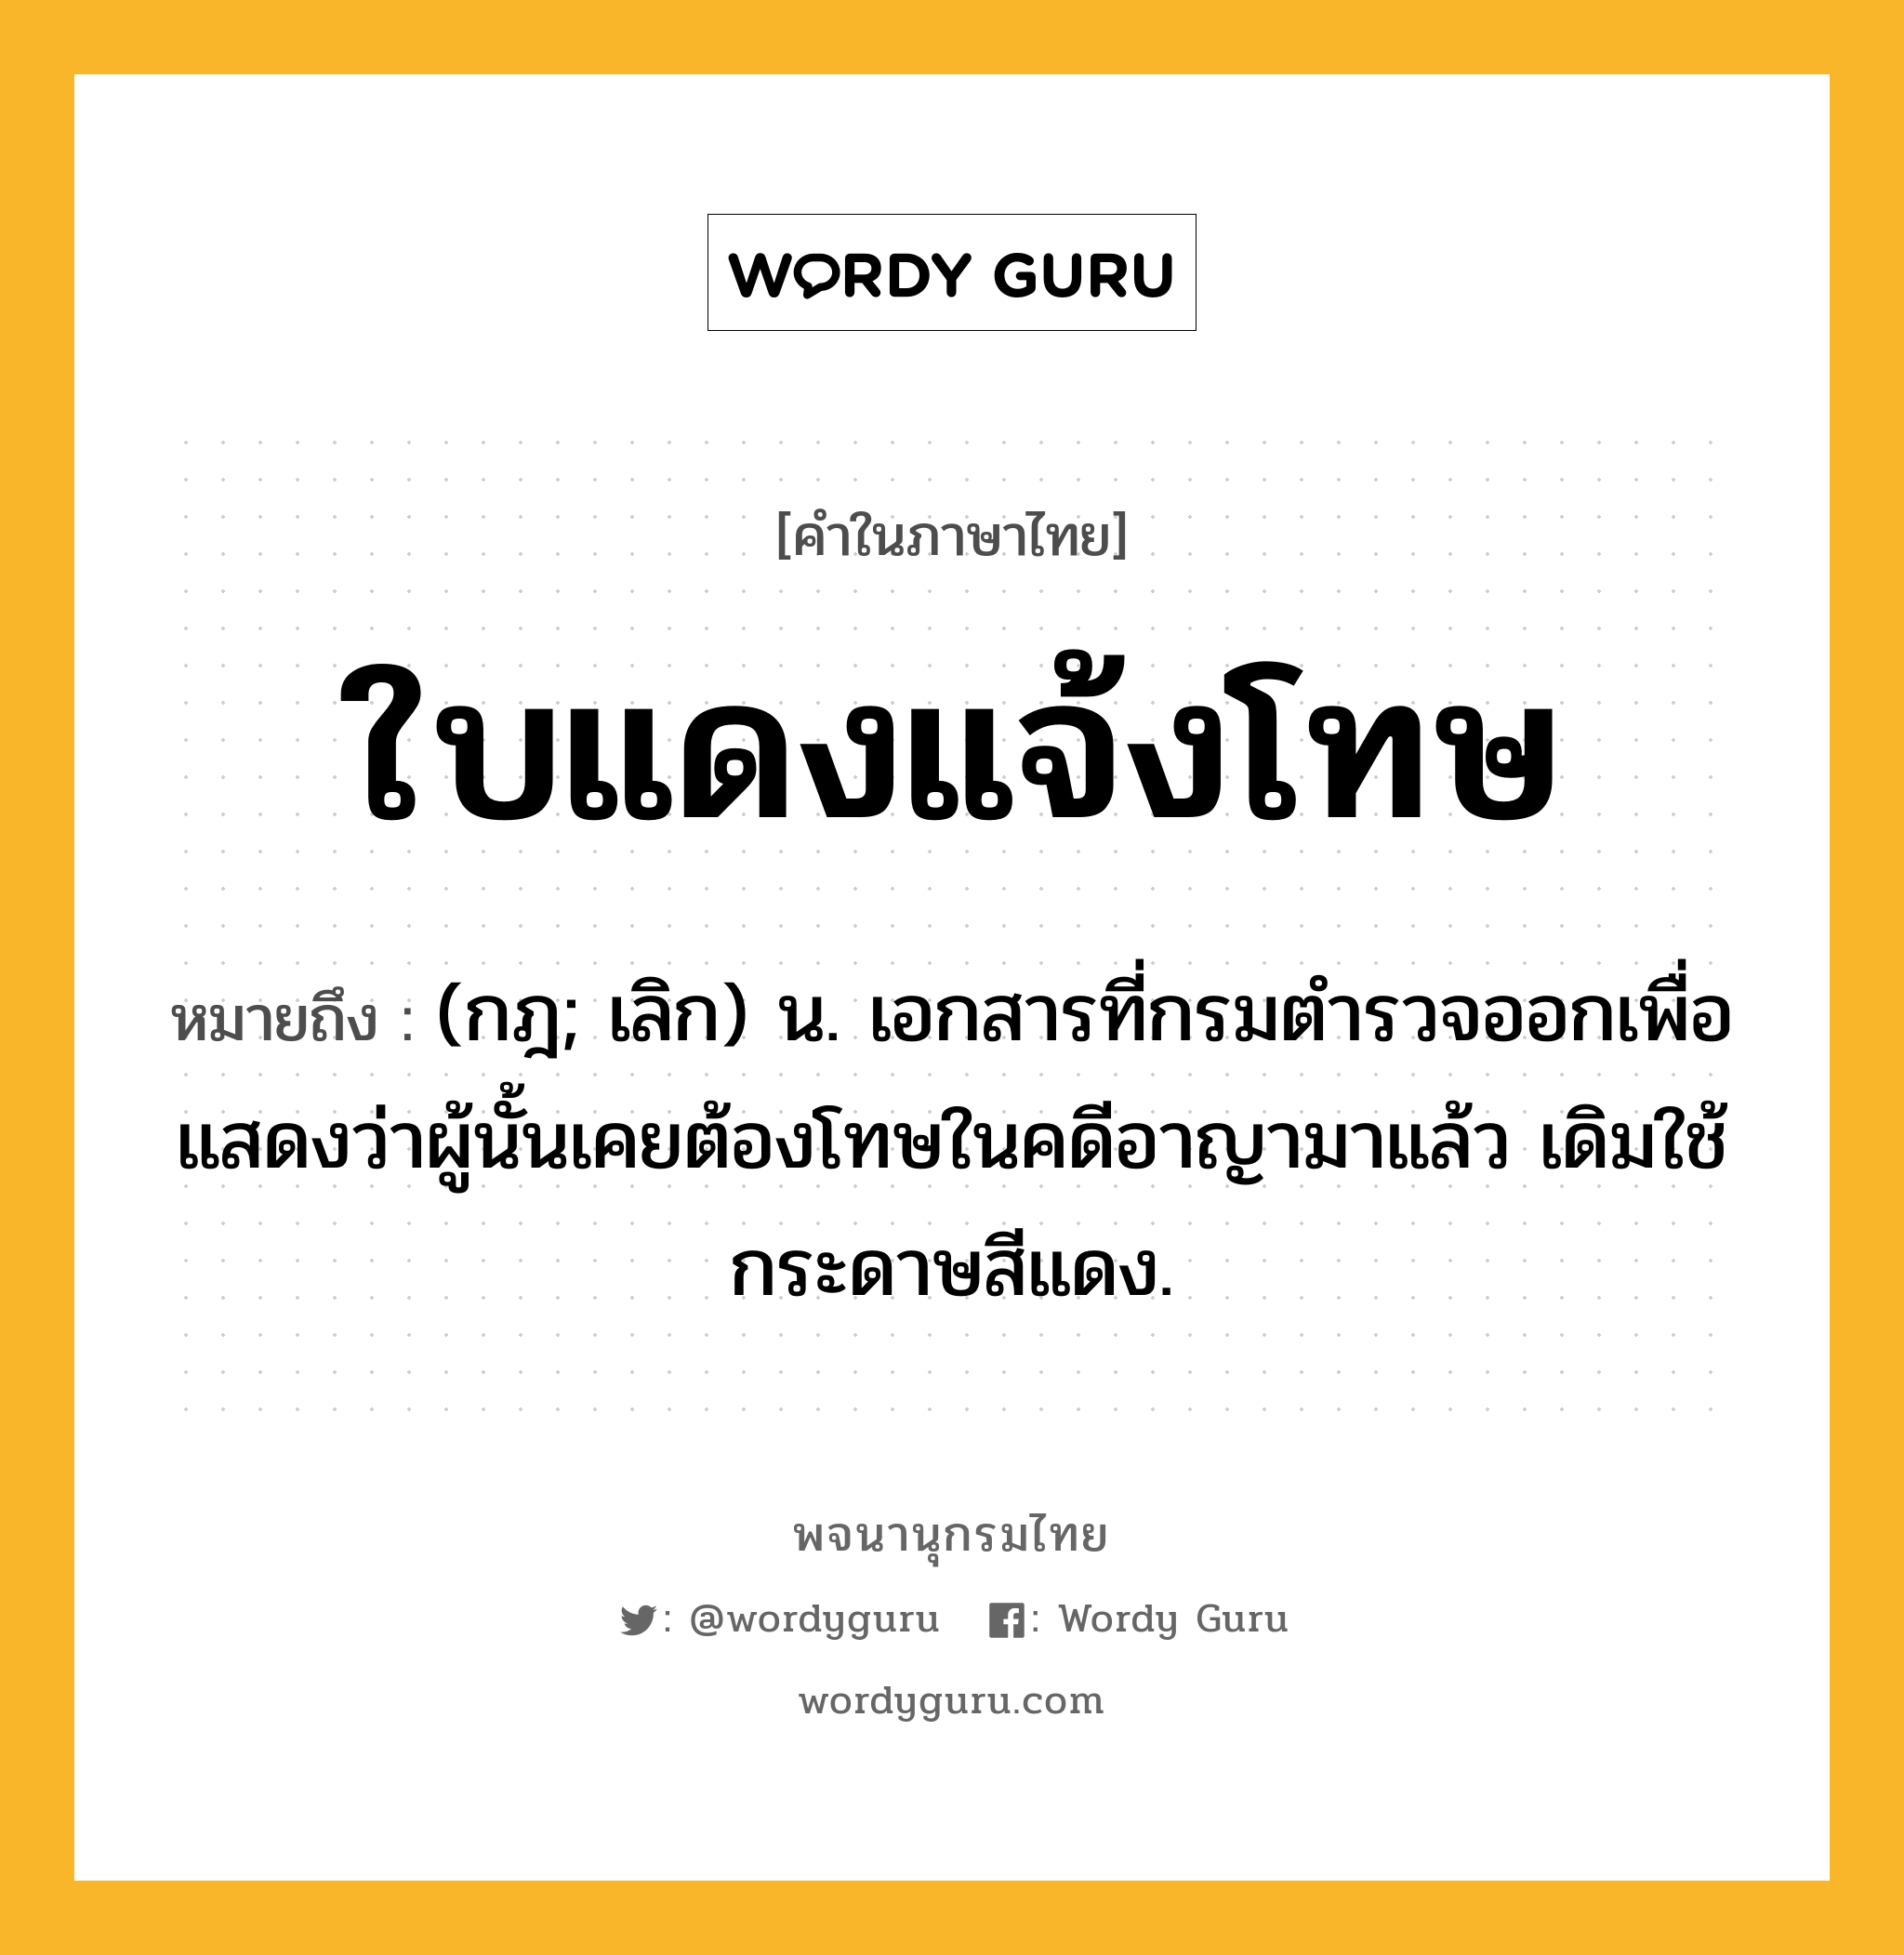 ใบแดงแจ้งโทษ ความหมาย หมายถึงอะไร?, คำในภาษาไทย ใบแดงแจ้งโทษ หมายถึง (กฎ; เลิก) น. เอกสารที่กรมตํารวจออกเพื่อแสดงว่าผู้นั้นเคยต้องโทษในคดีอาญามาแล้ว เดิมใช้กระดาษสีแดง.